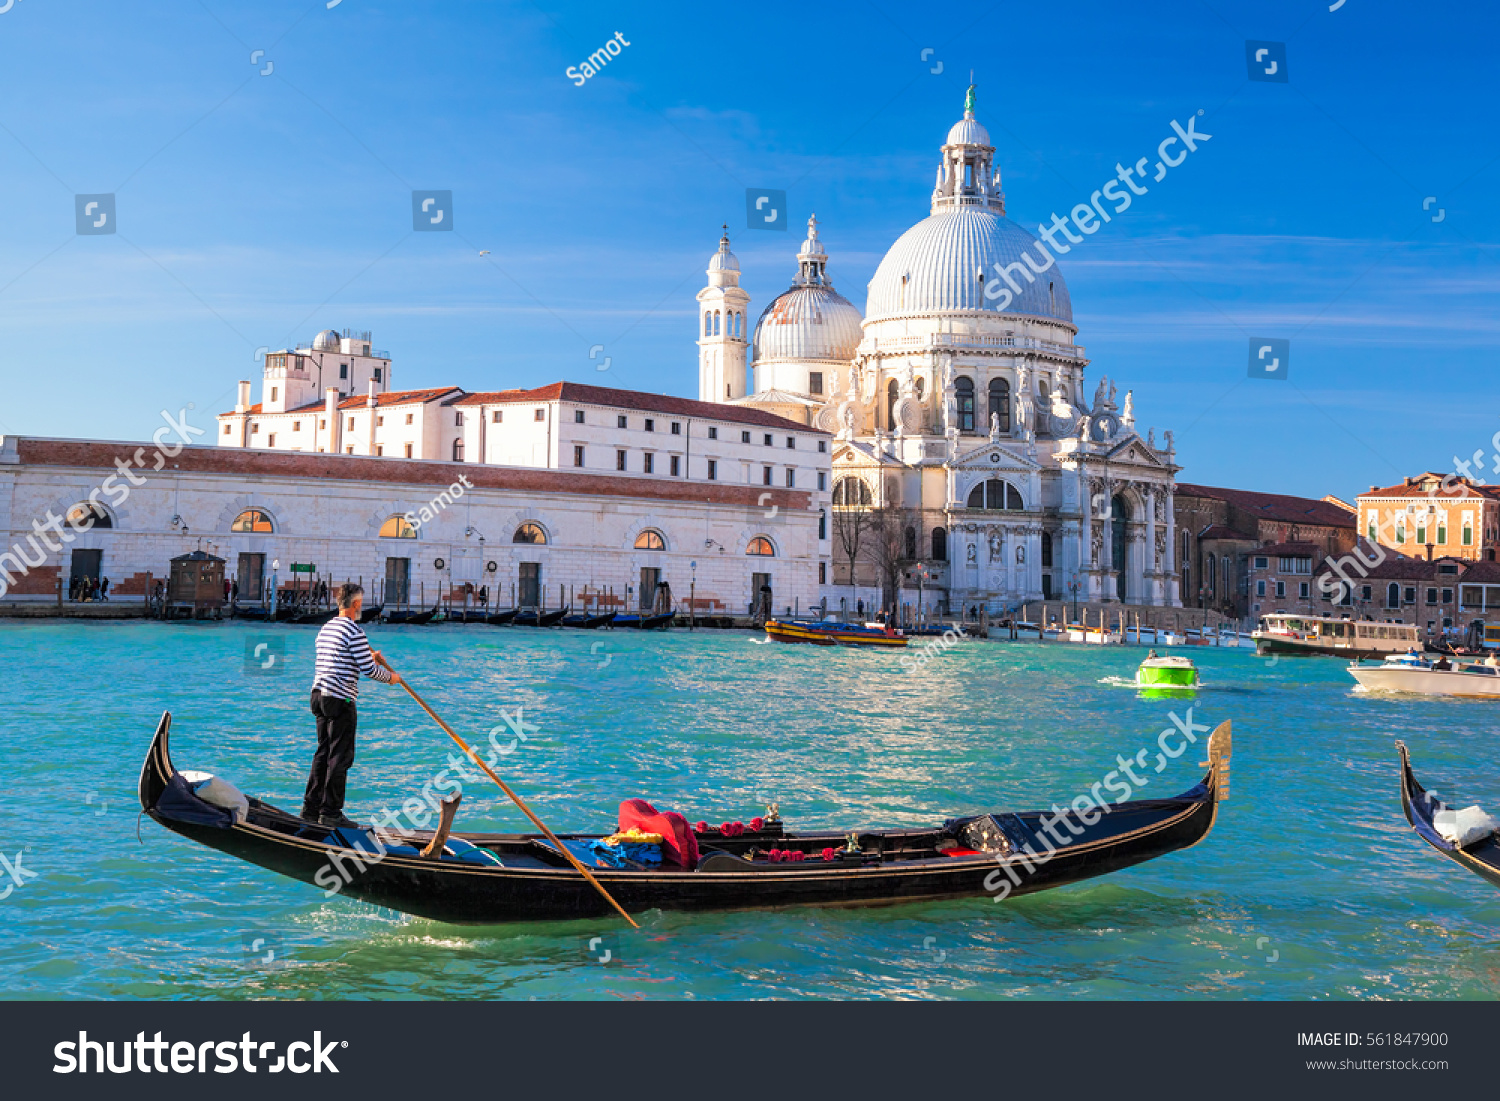 Grand Canal with gondola against Basilica Santa Maria della Salute in Venice, Italy #561847900